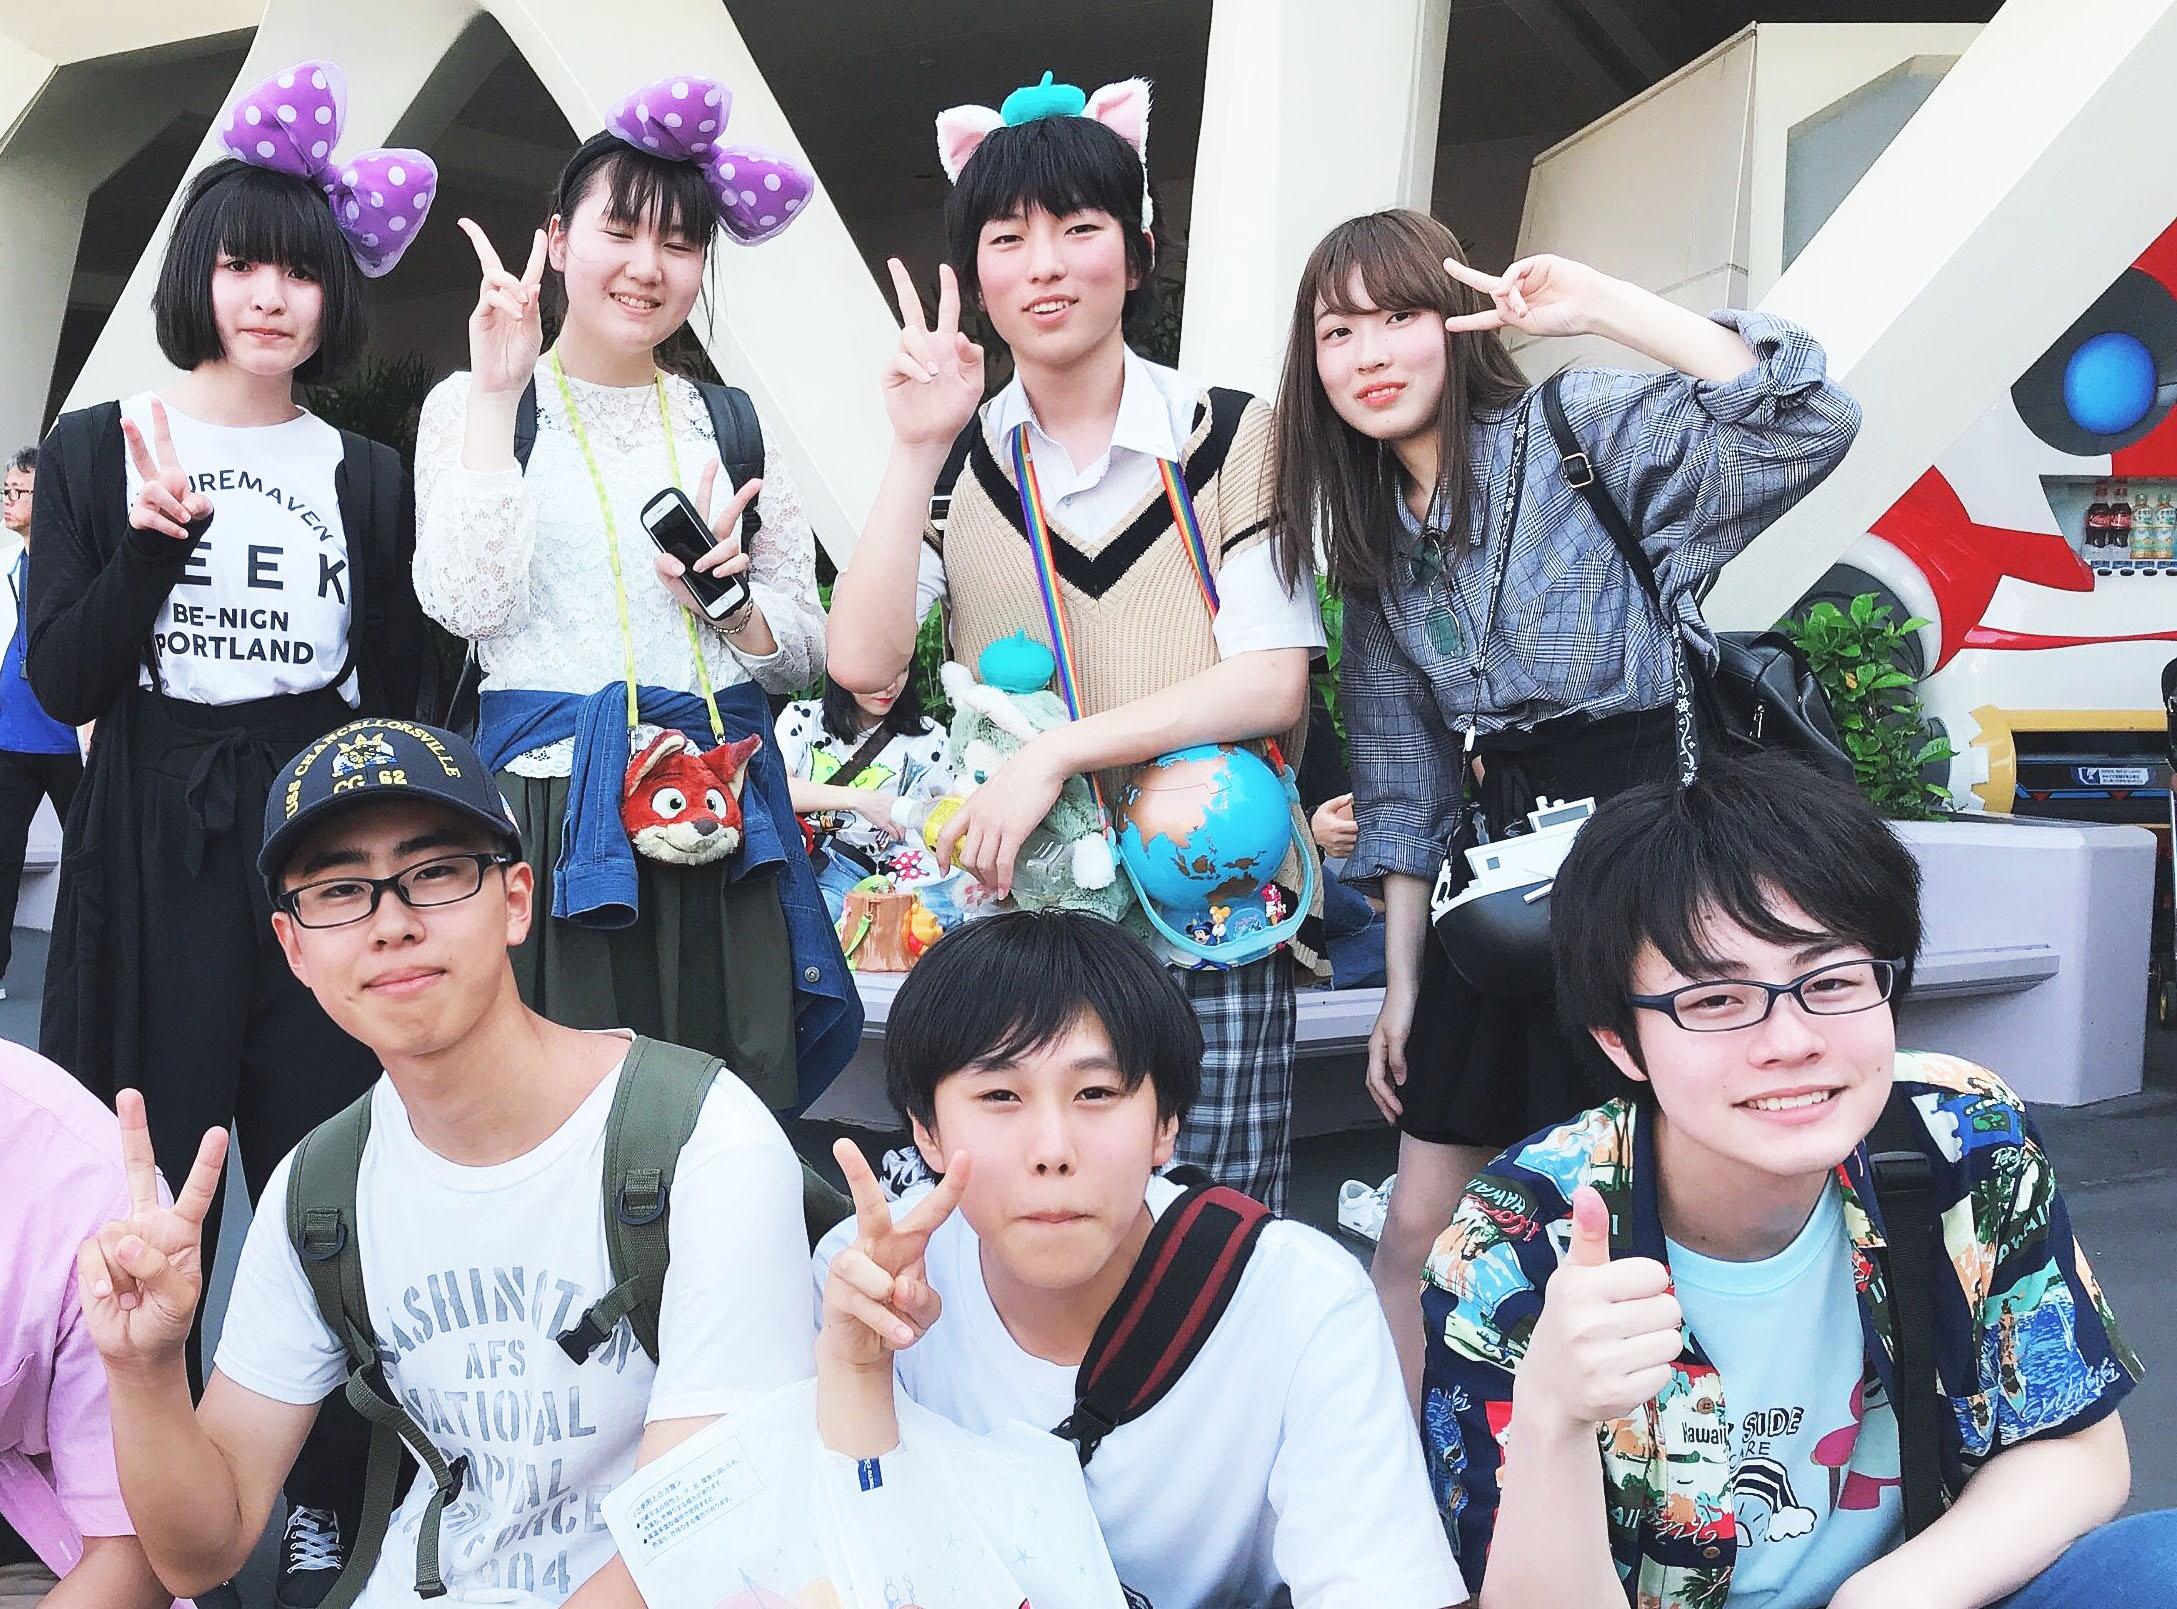 【校外学習】 “ワクワク”がいっぱいの「東京ディズニーランド」 友達との距離が縮まった1日